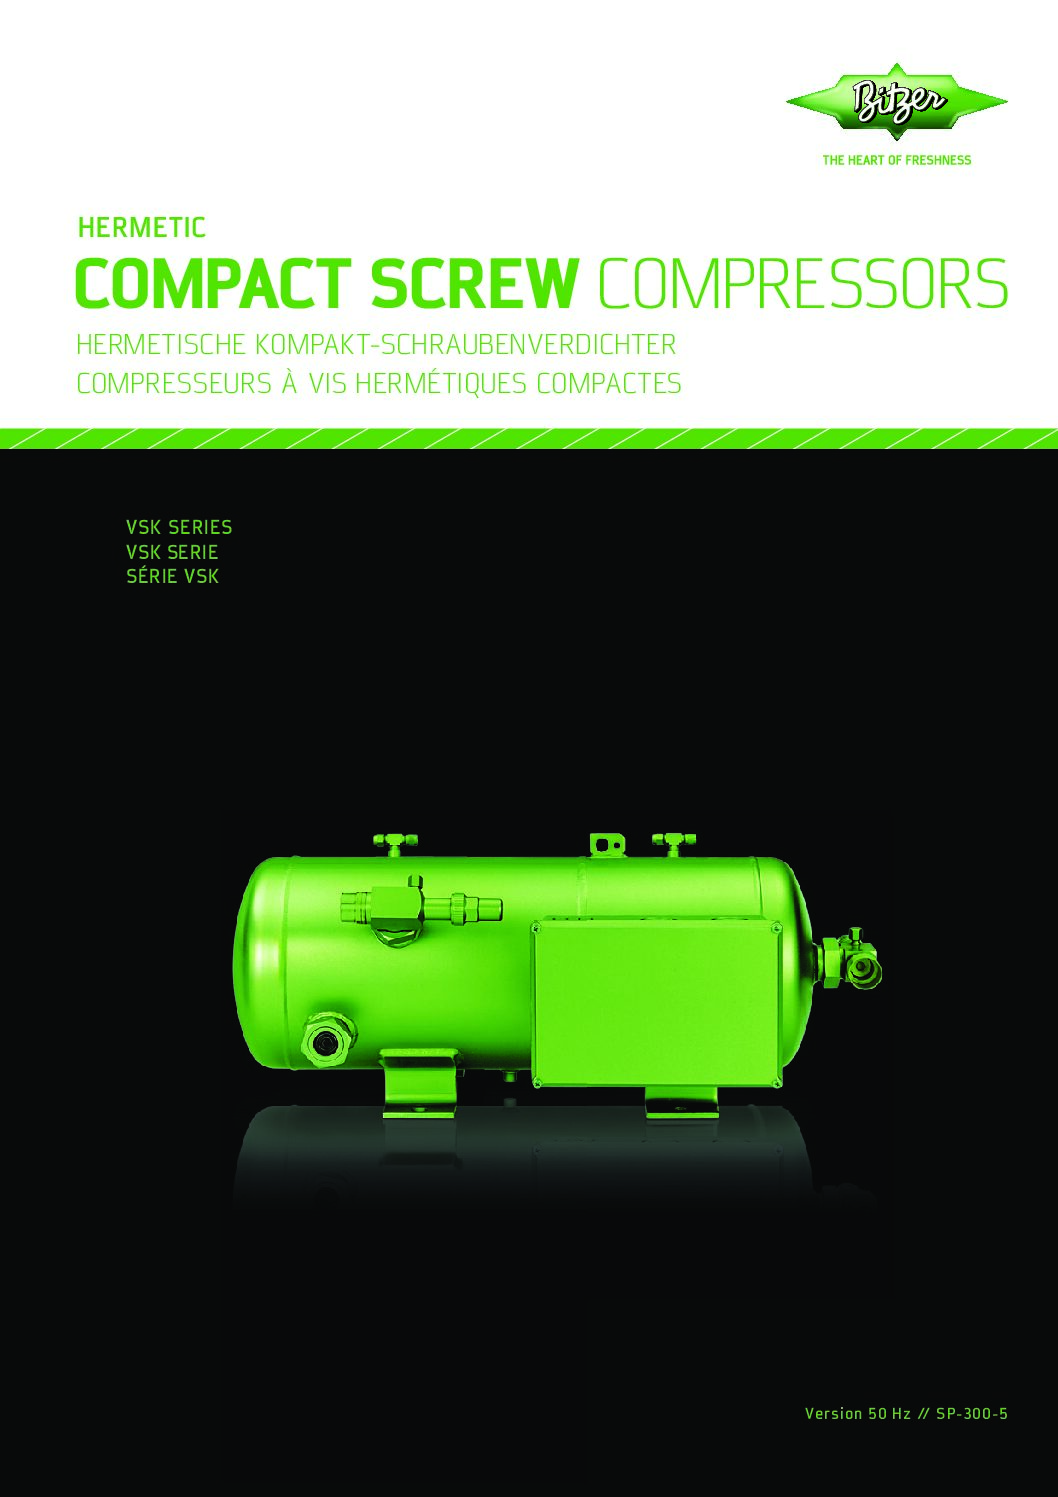 BITZER Hermetic Compact Screw Compressors